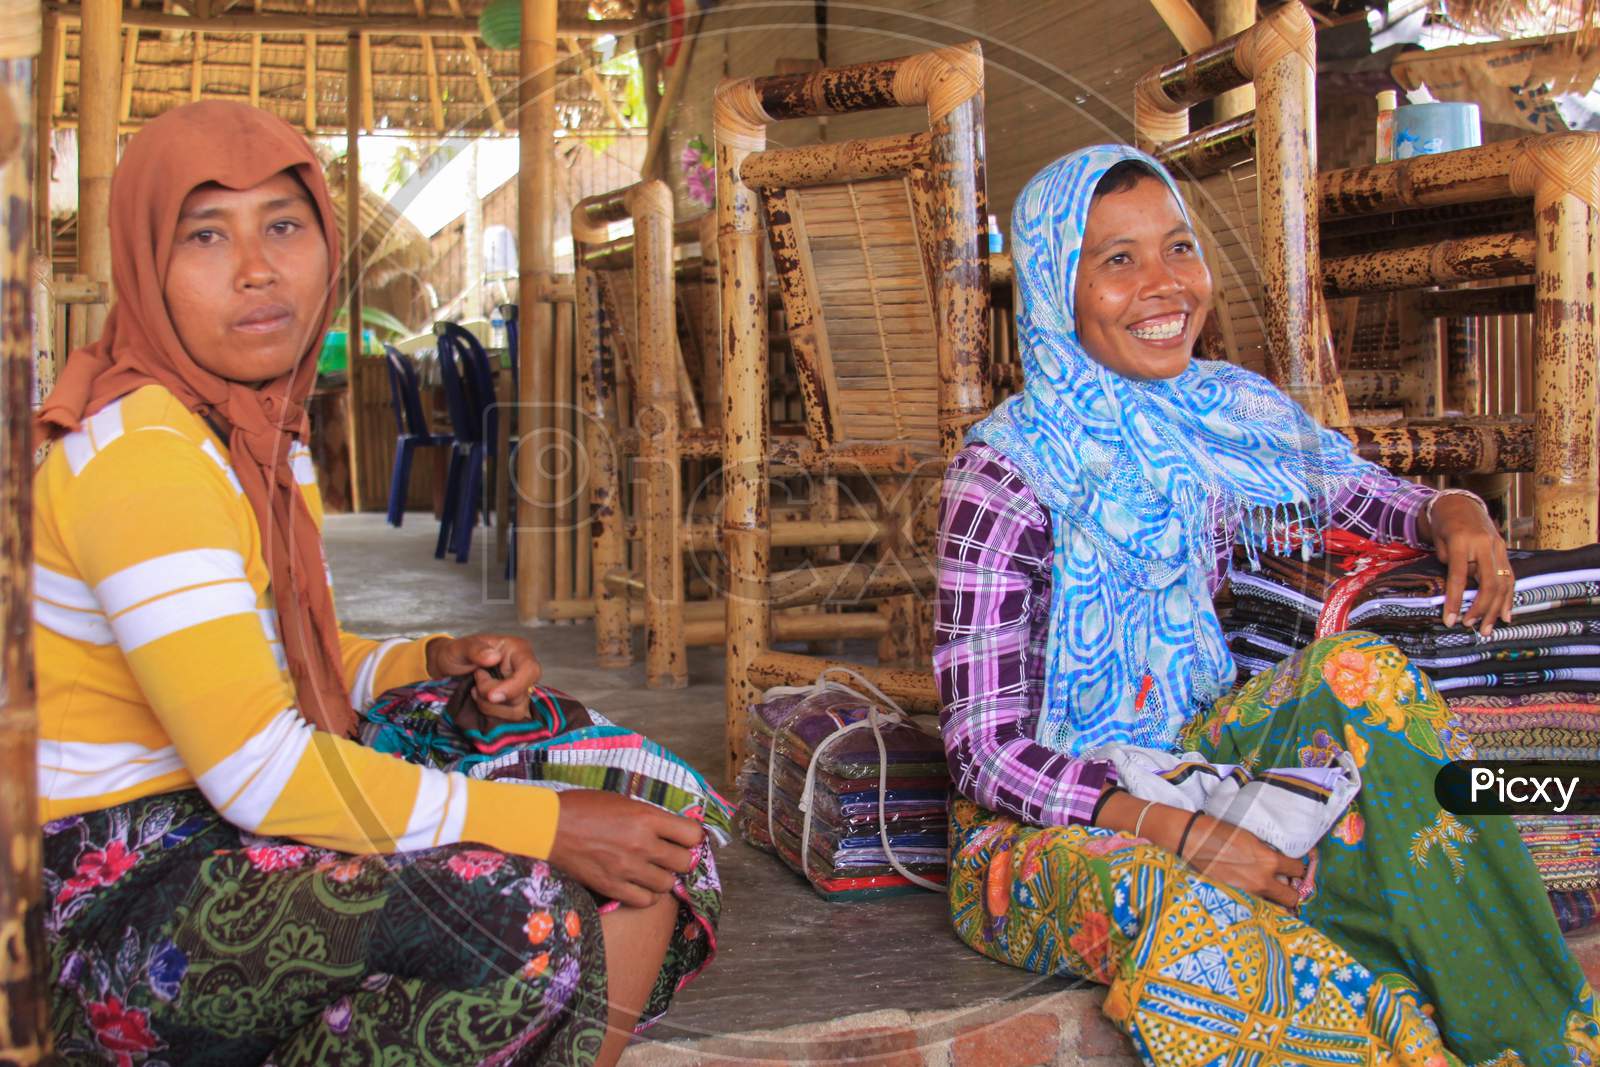 Sasak Women From Village Selling Batik In Lombok